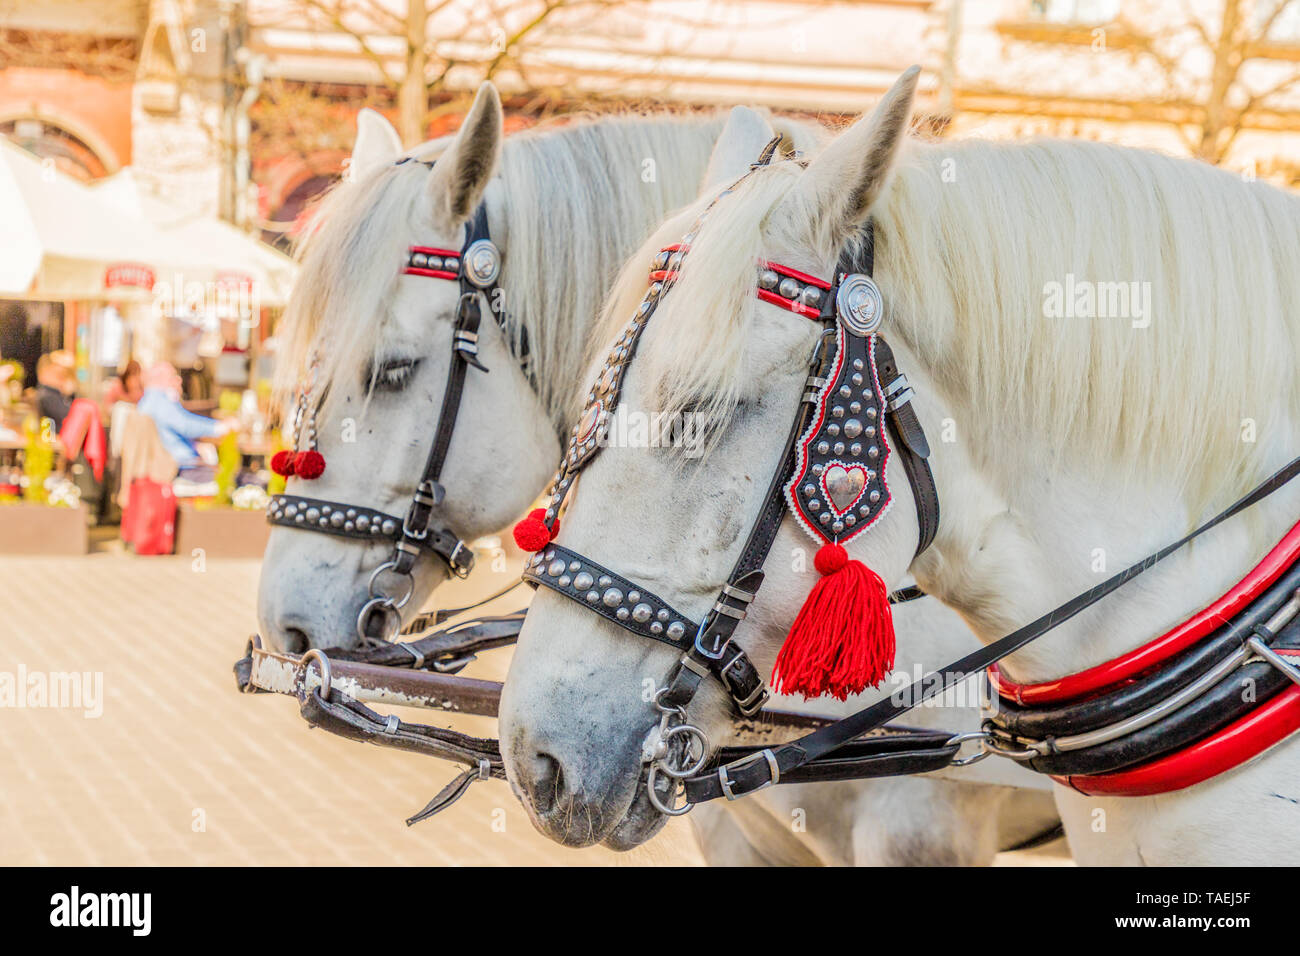 Portriats di cavalli nella Piazza Principale di Cracovia in Polonia Foto Stock